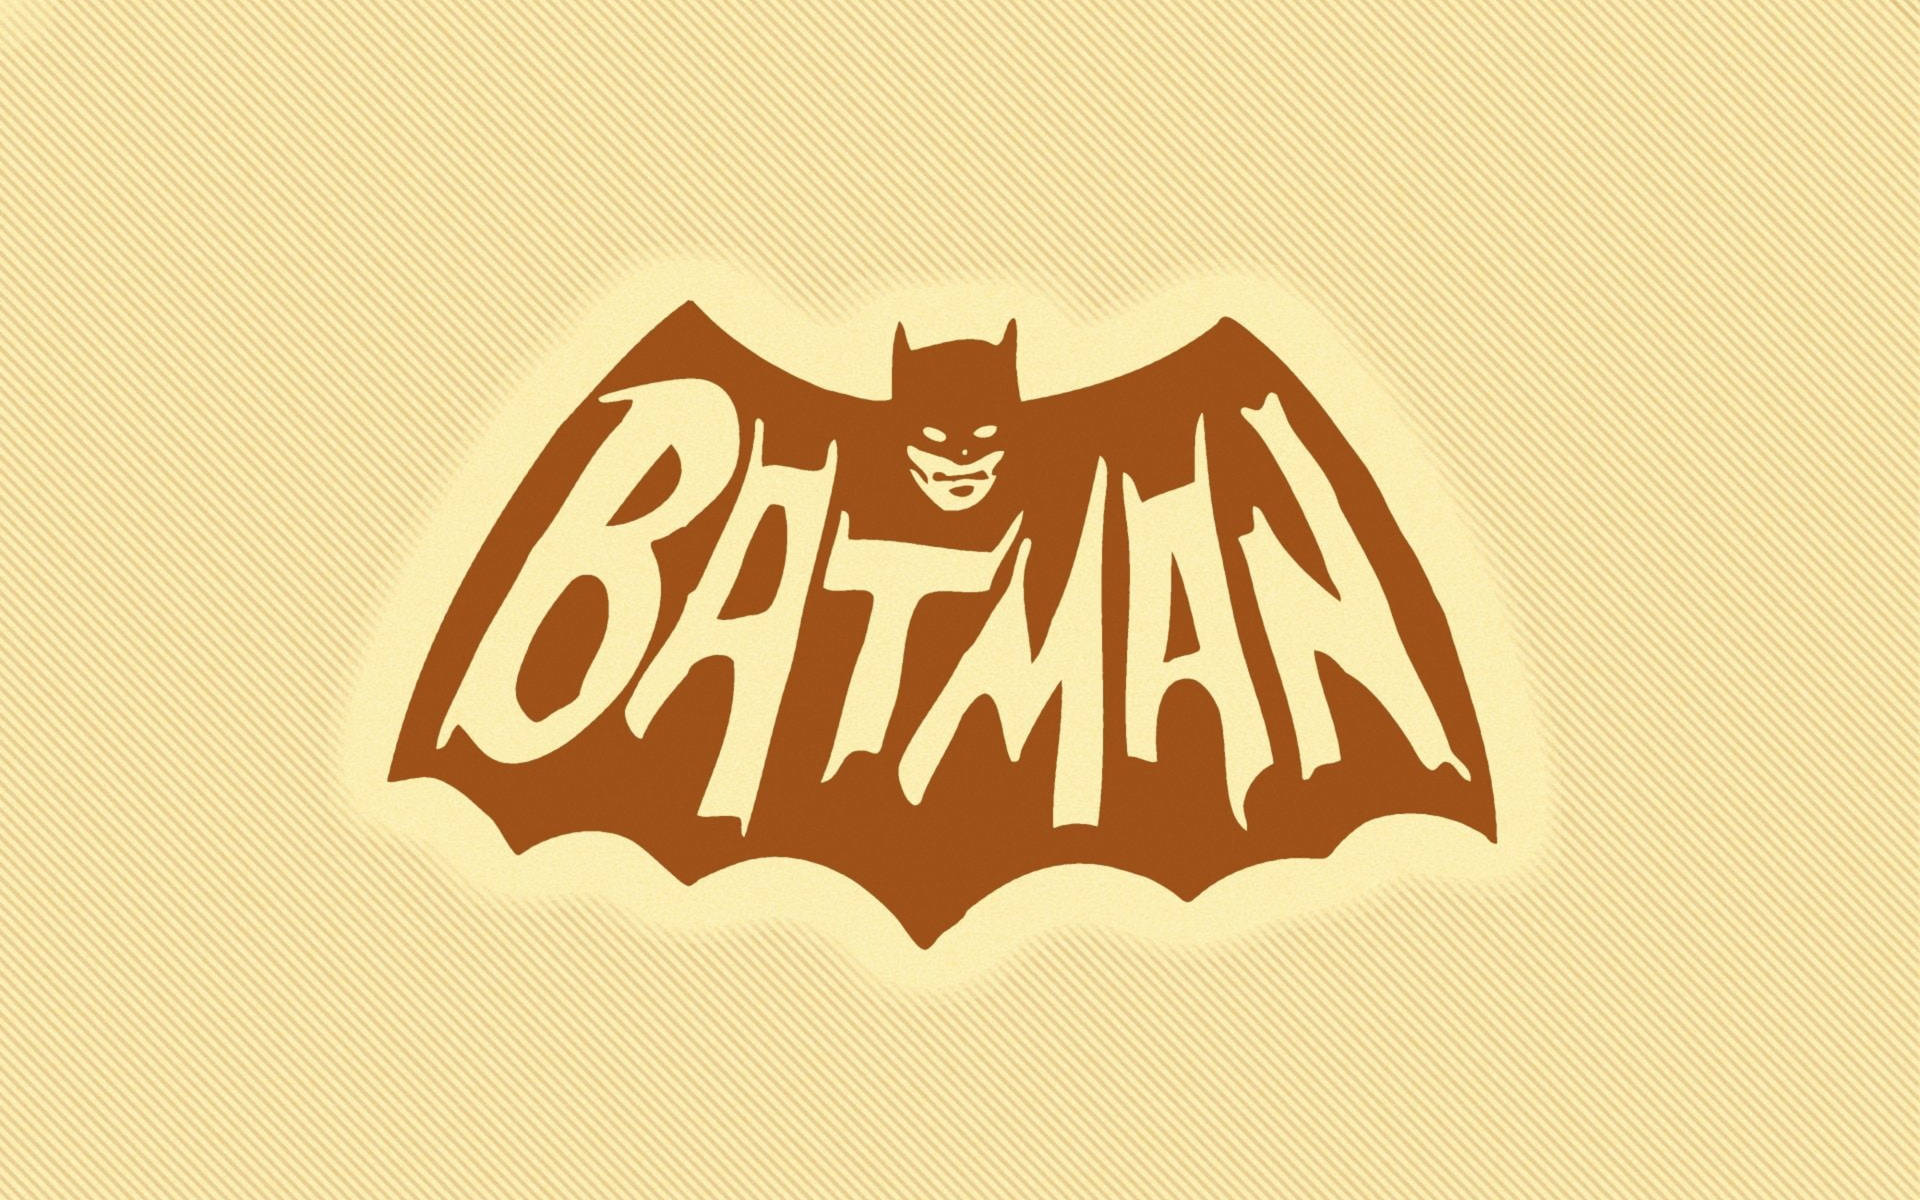 Digital Art Batman Logo